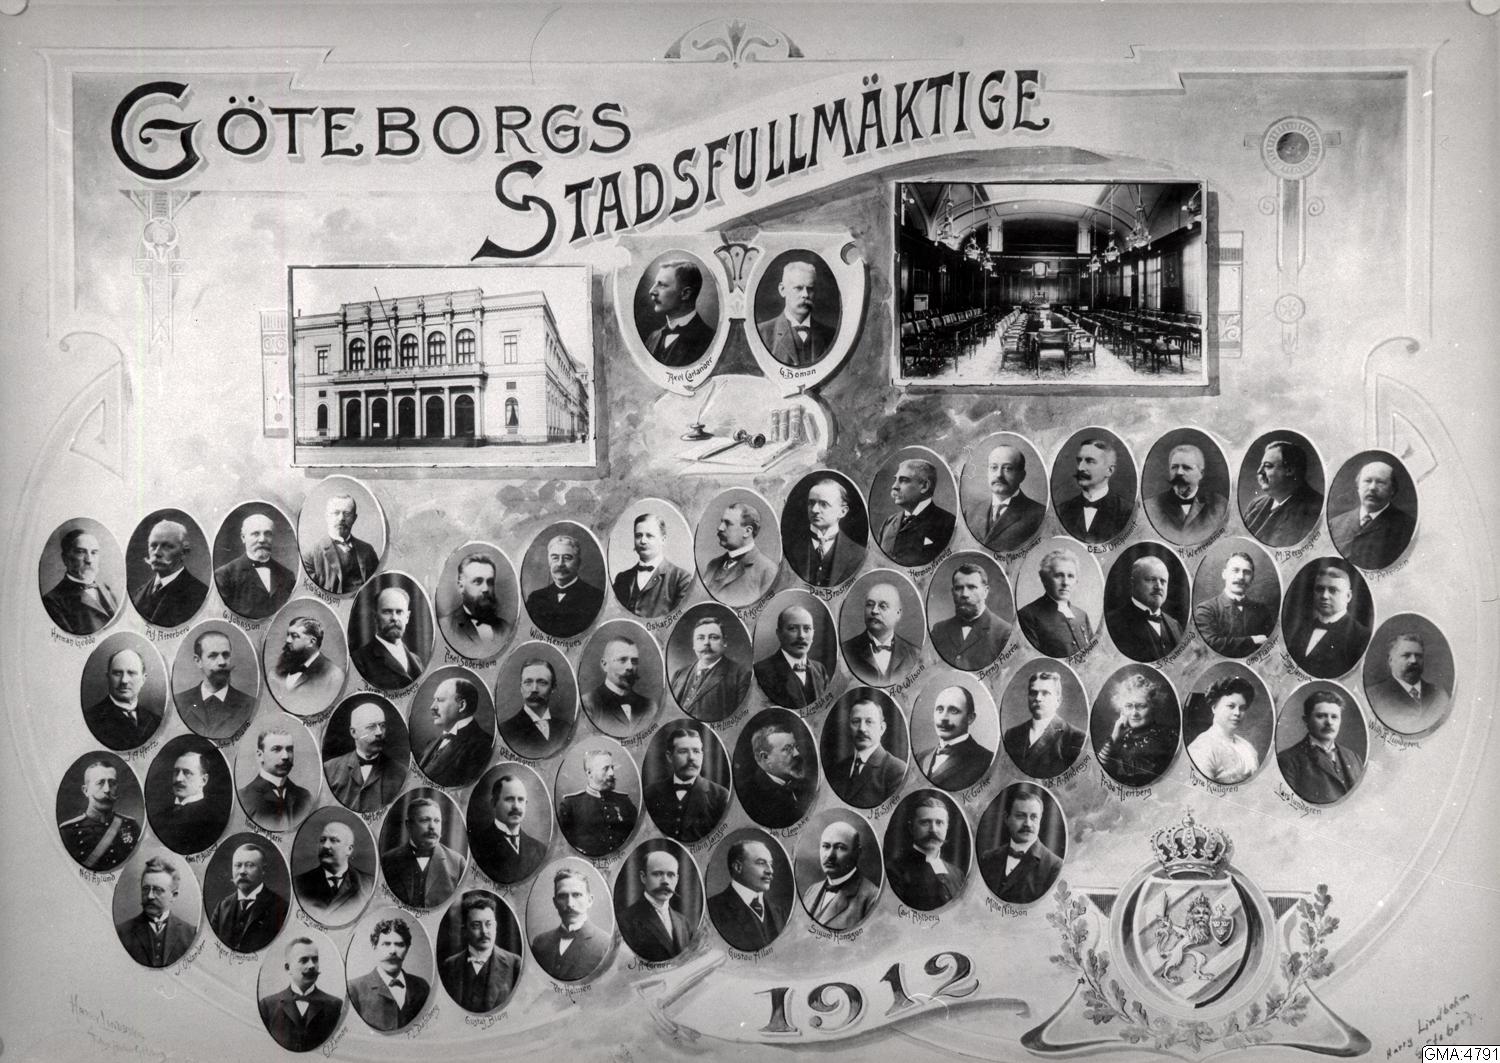 Göteborgs stadsfullmäktige 1912 och bilder från Börsen och fullmäktiges sessionssal. Fotograf: Harry Lindbohm Källa: Göteborgs stadsmuseum